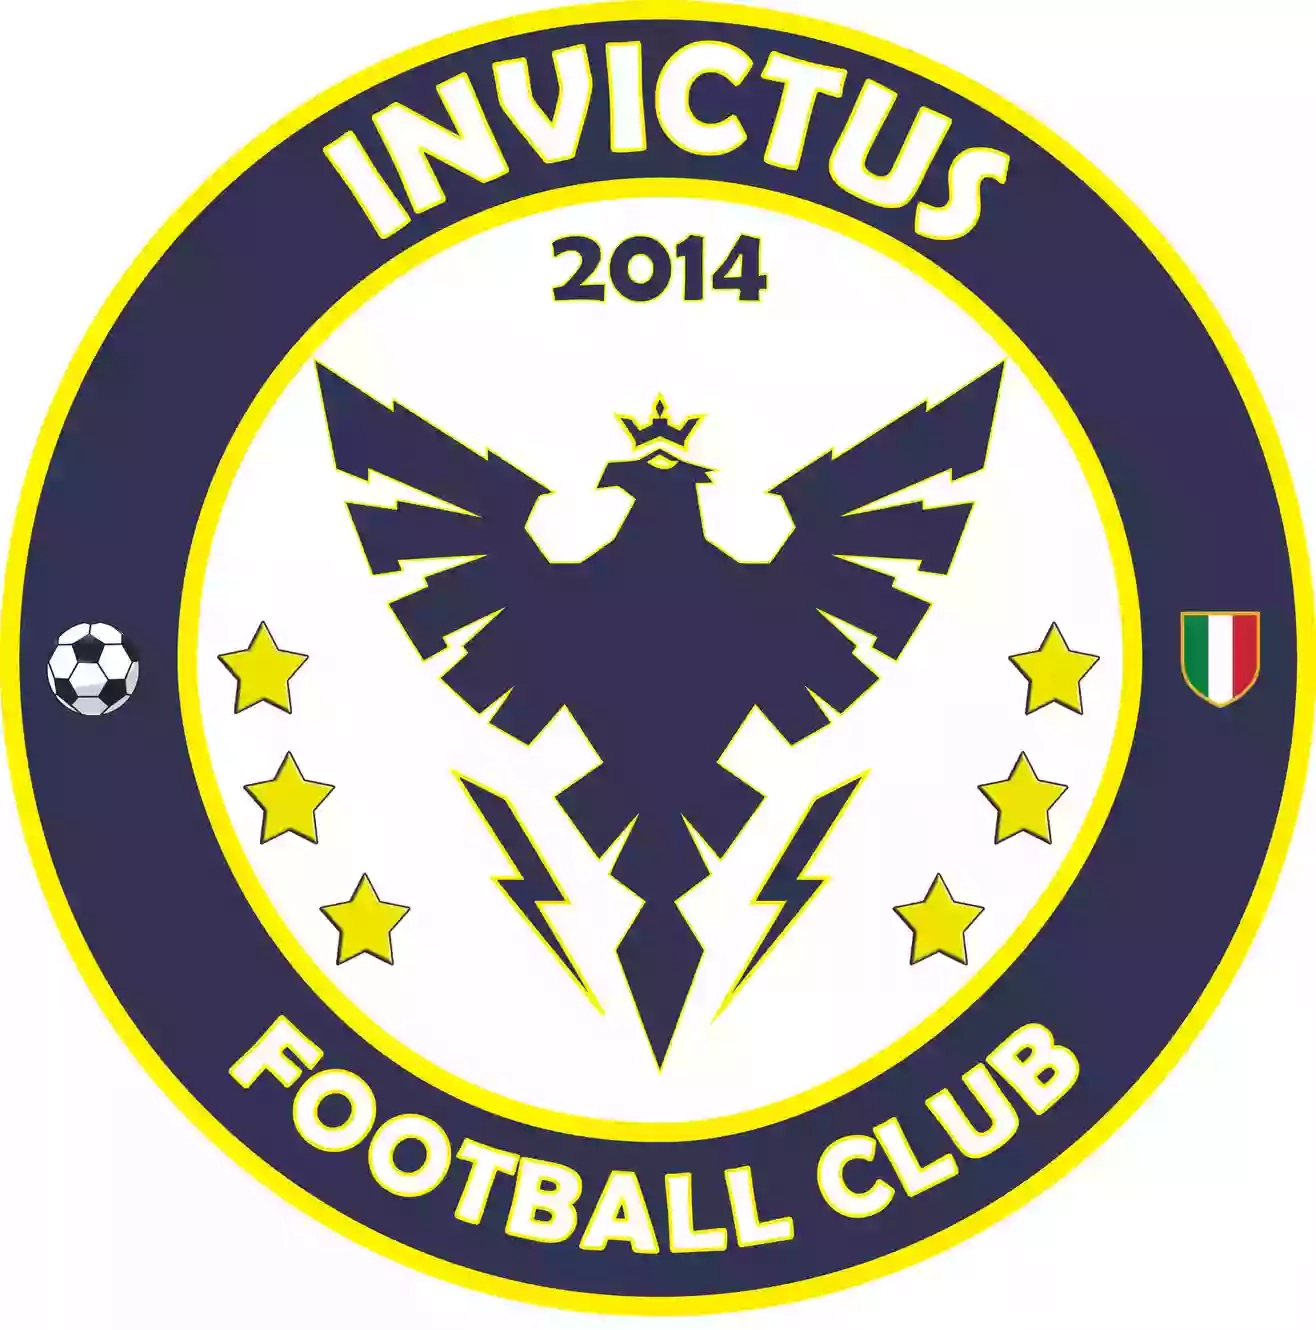 Scuola Calcio Invictus FC 2014 di Enzo Marchese